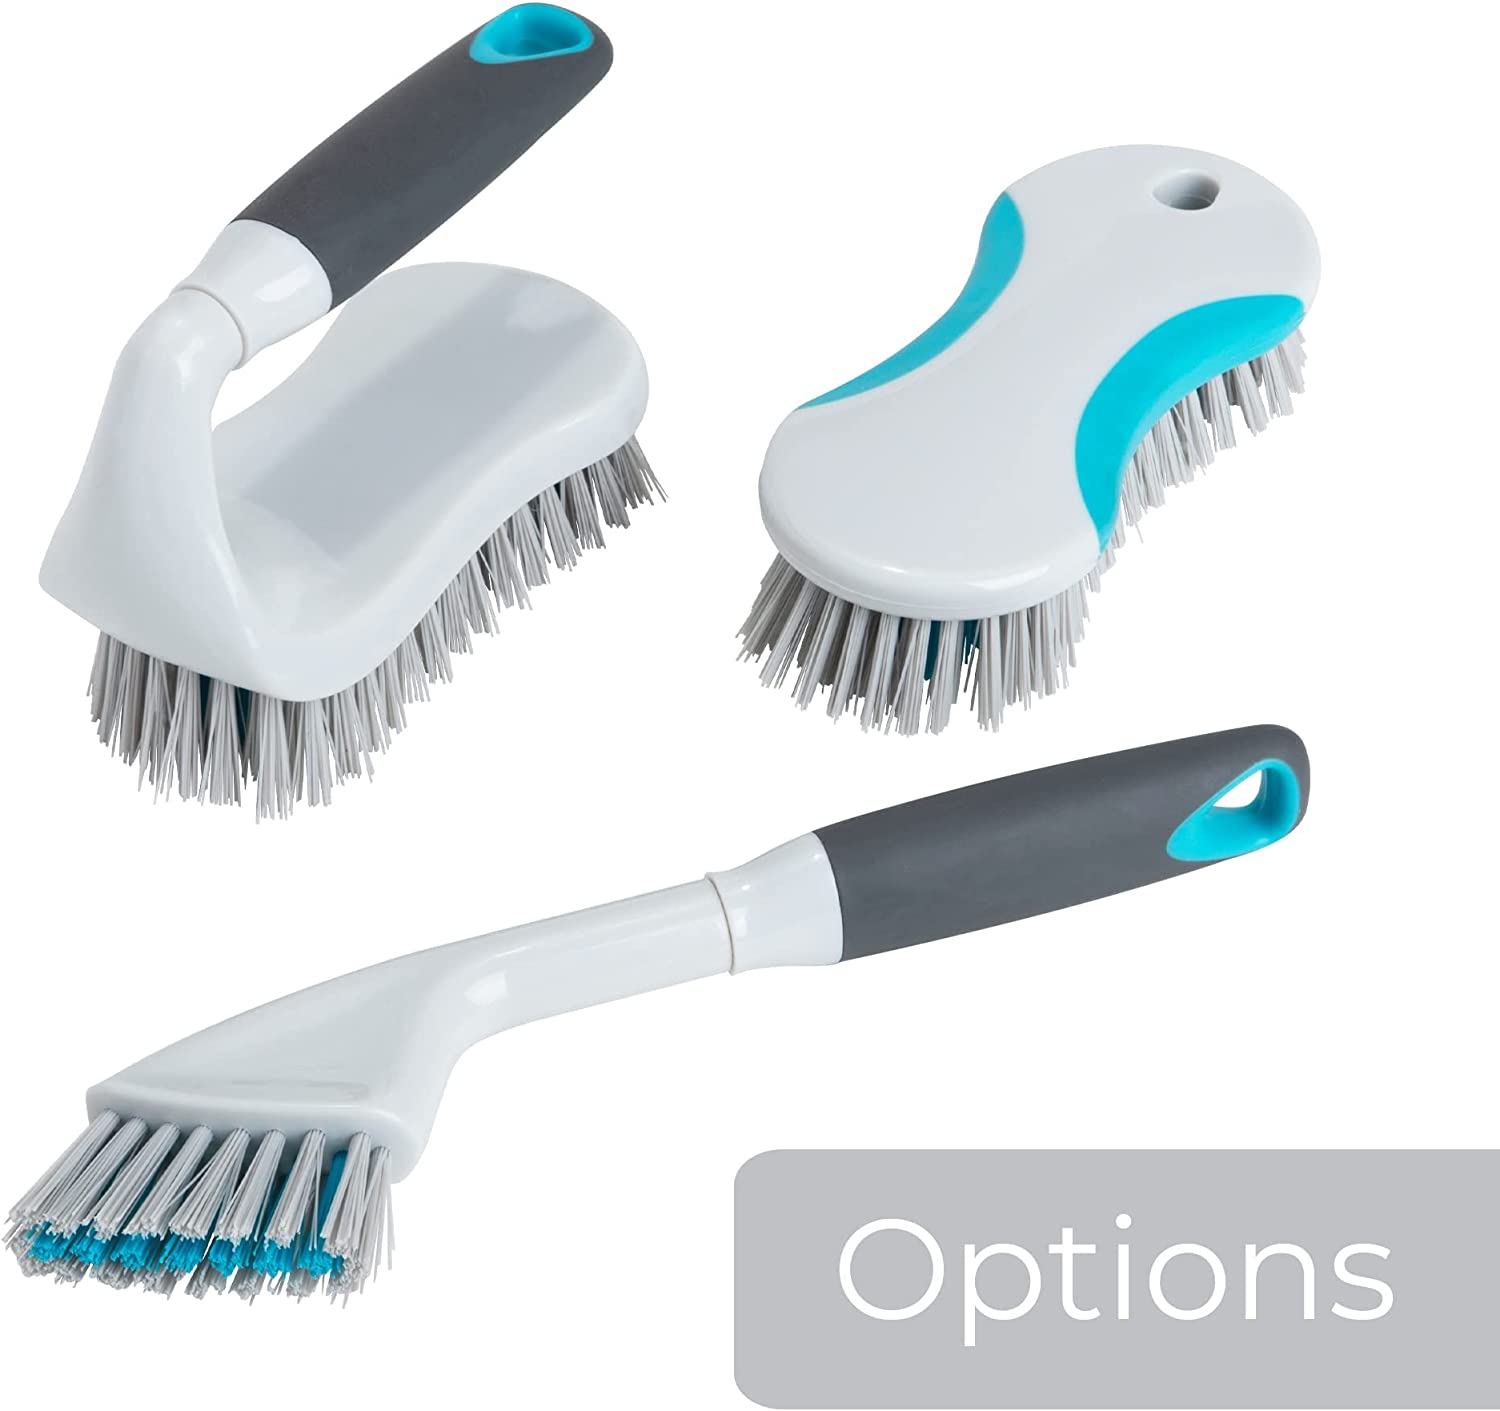 https://www.shopsmartdesign.com/cdn/shop/products/handheld-grout-brush-smart-design-cleaning-7001511-incrementing-number-376018.jpg?v=1679342285